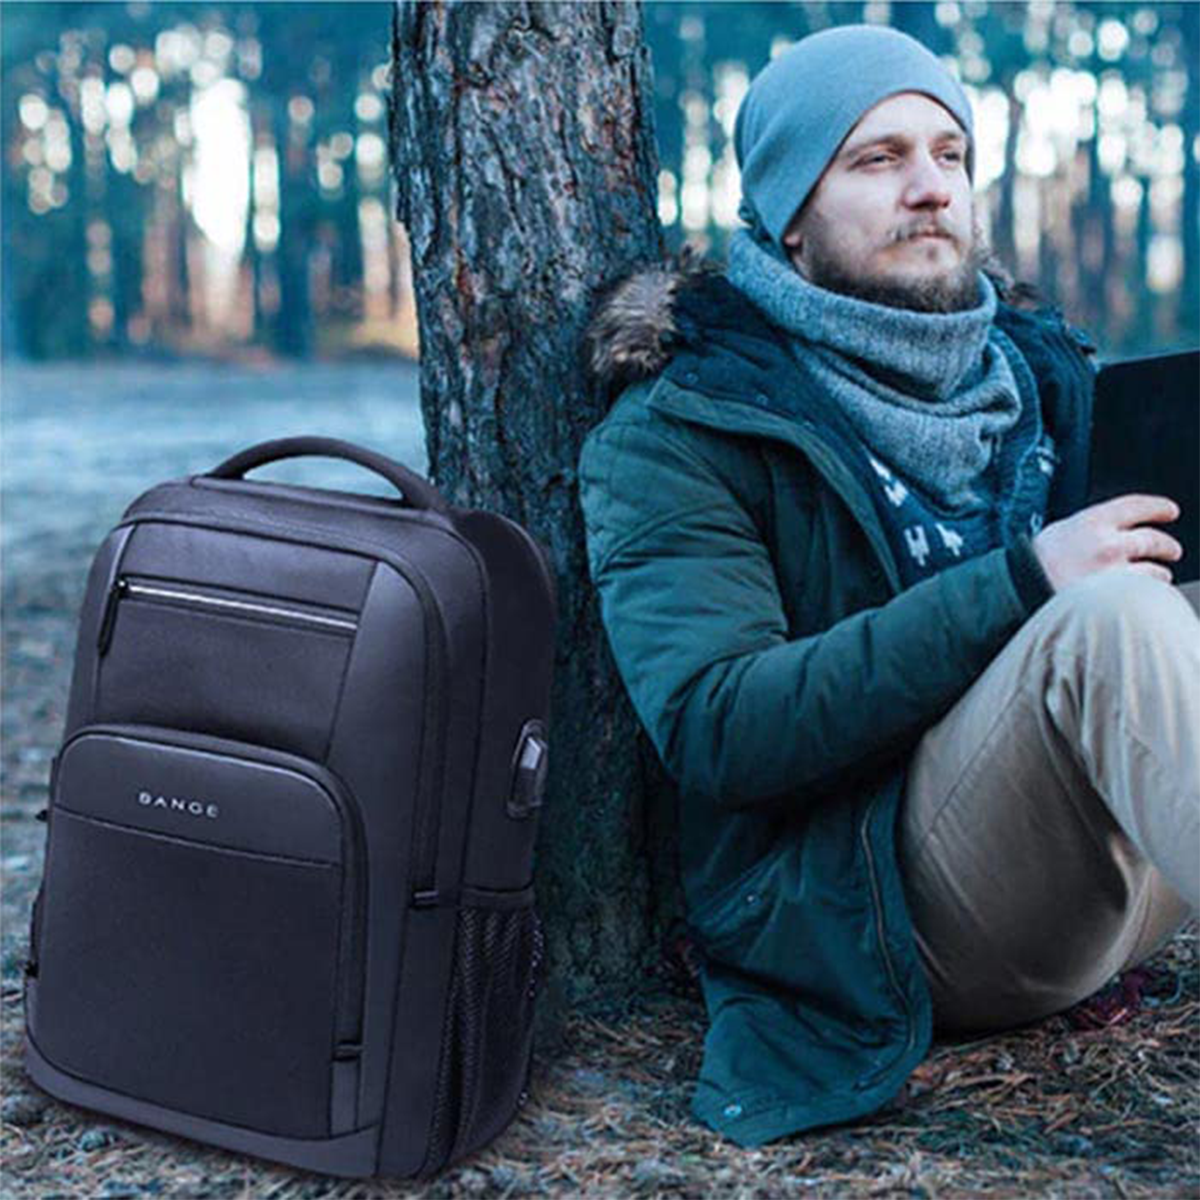 Red Lemon Swiss Cut Design 15.6 Inch 26L Smart Laptop Backpack Bag Wit ...